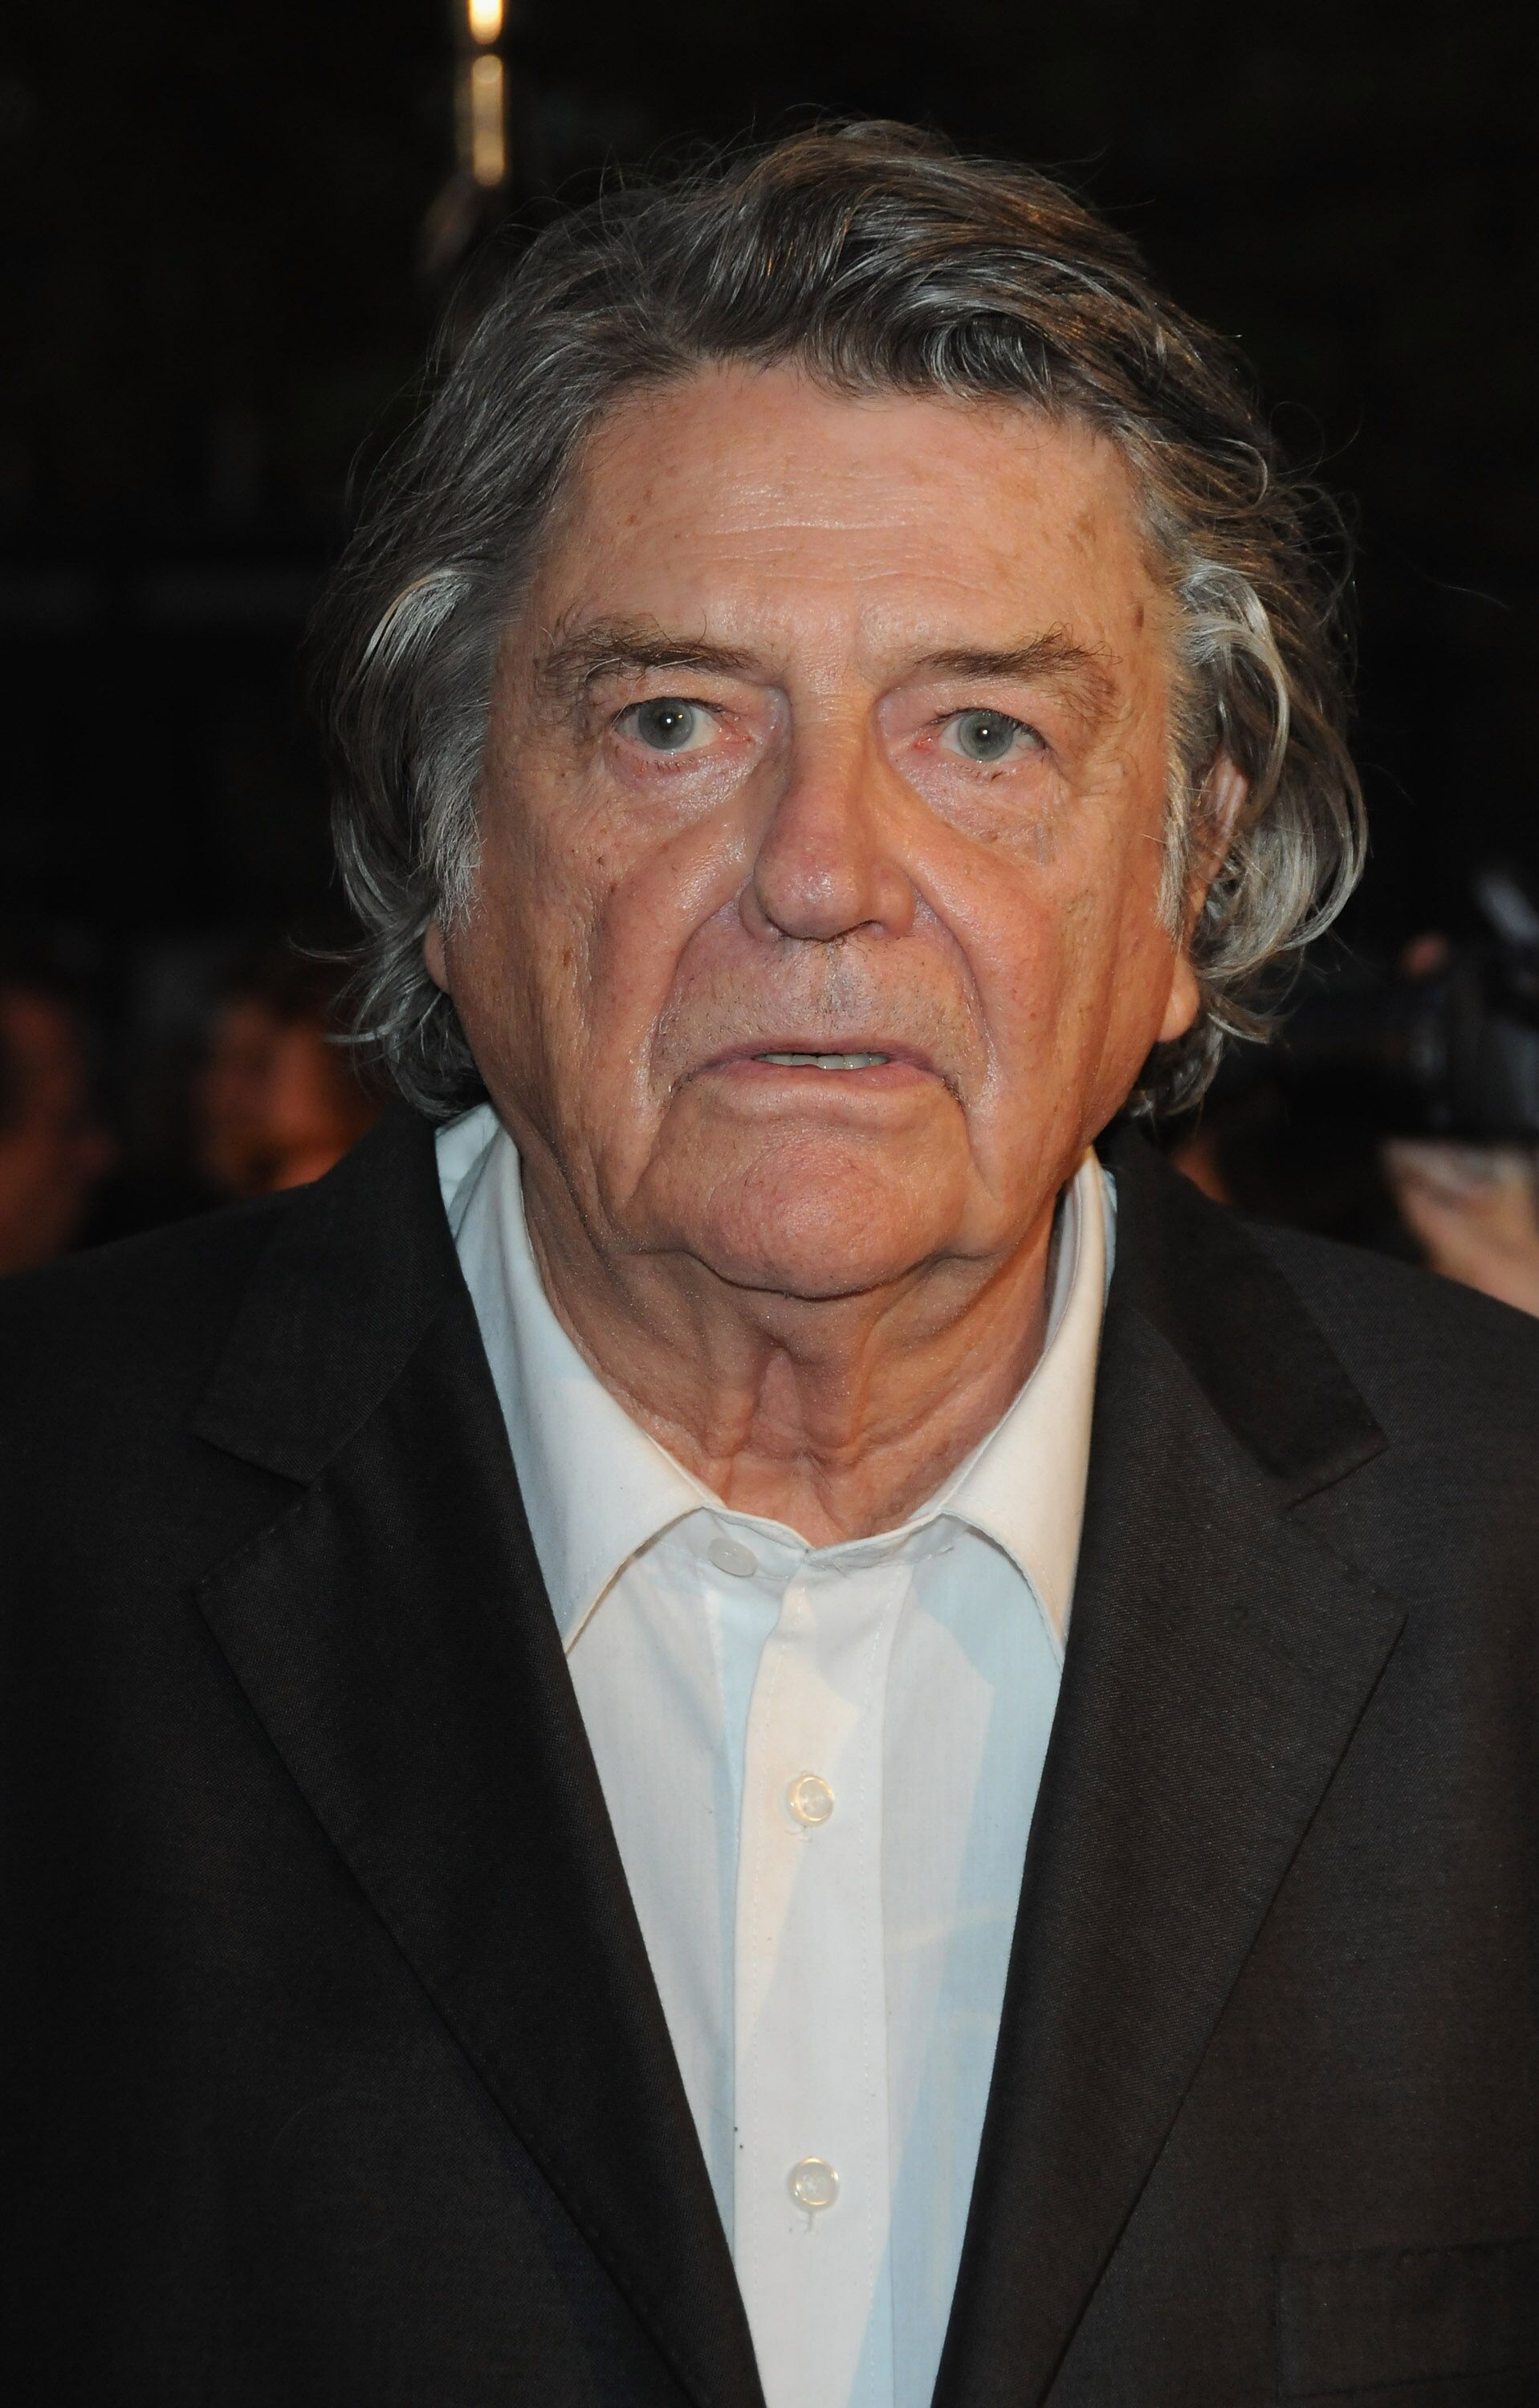 Directeur Jean-Pierre Mocky à la Cinémathèque française le 23 septembre 2009 à Paris, France. | Photo : Getty Images